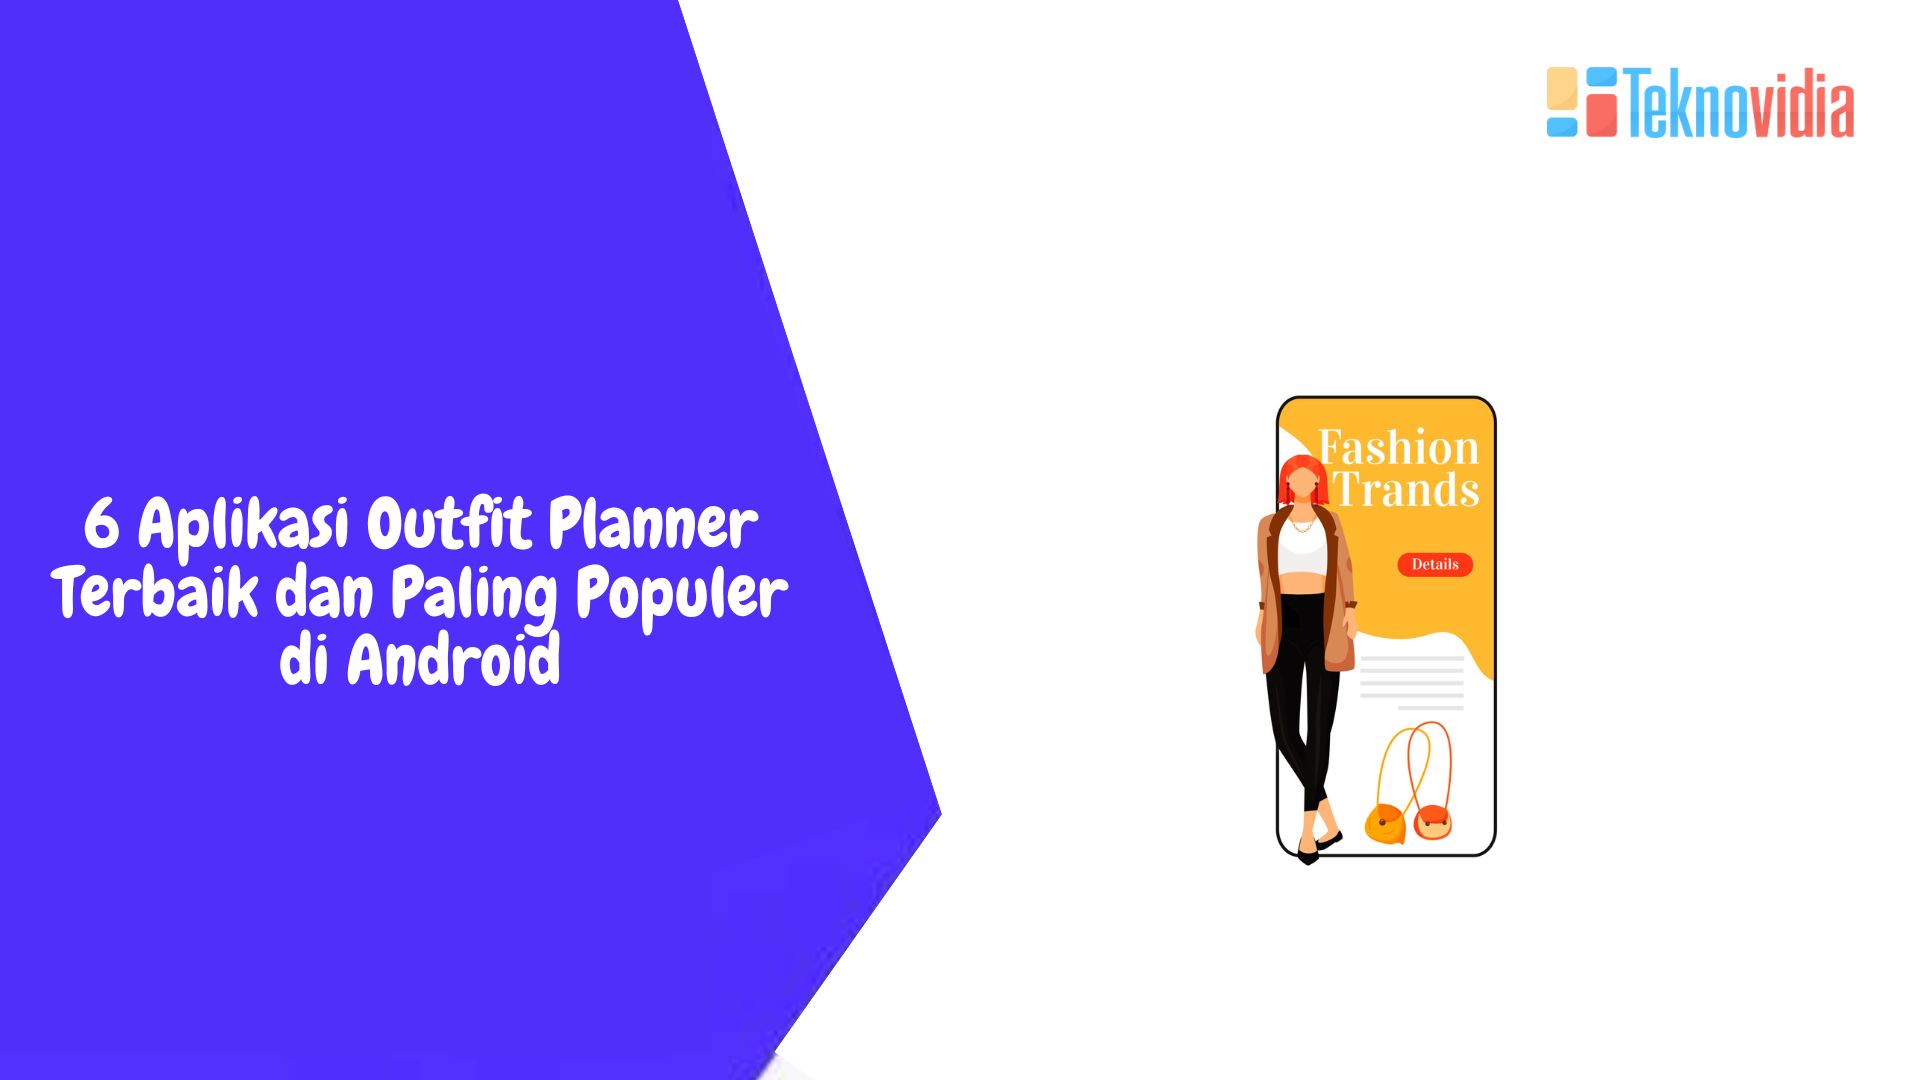 6 Aplikasi Outfit Planner Terbaik dan Paling Populer di Android